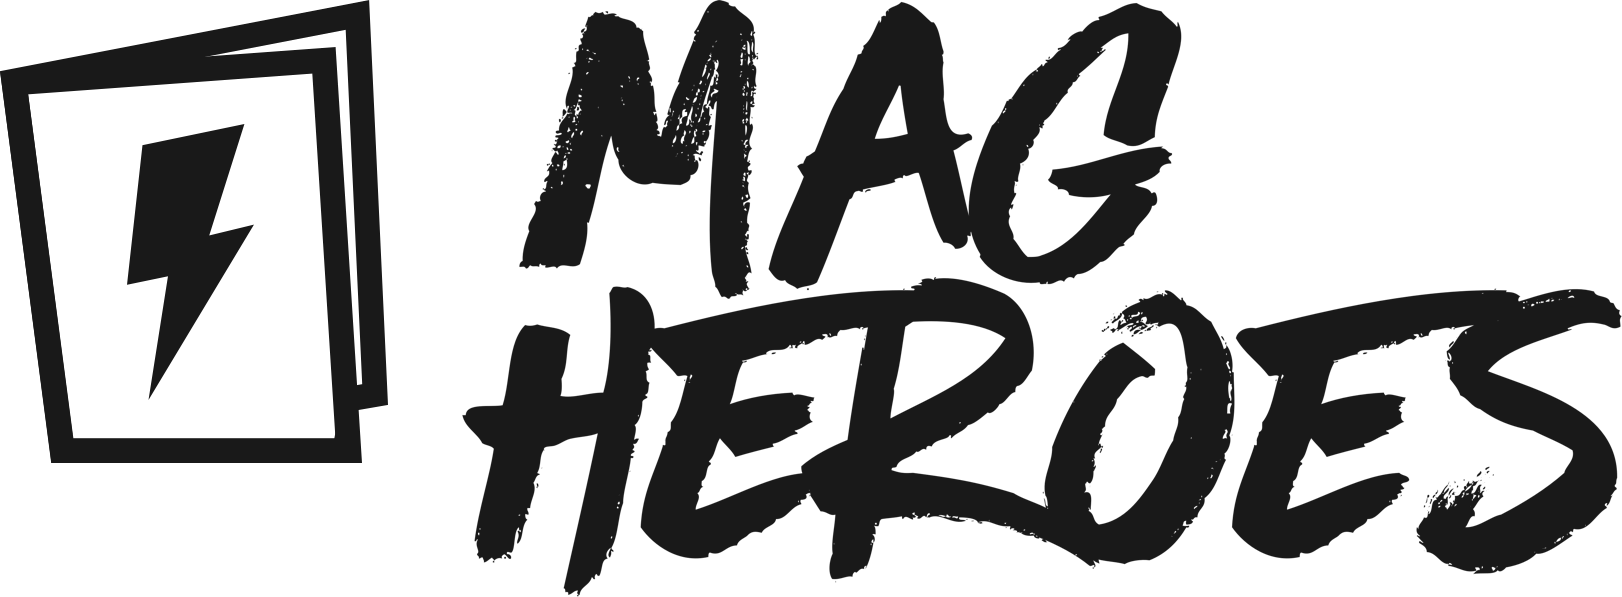 Mag Heroes